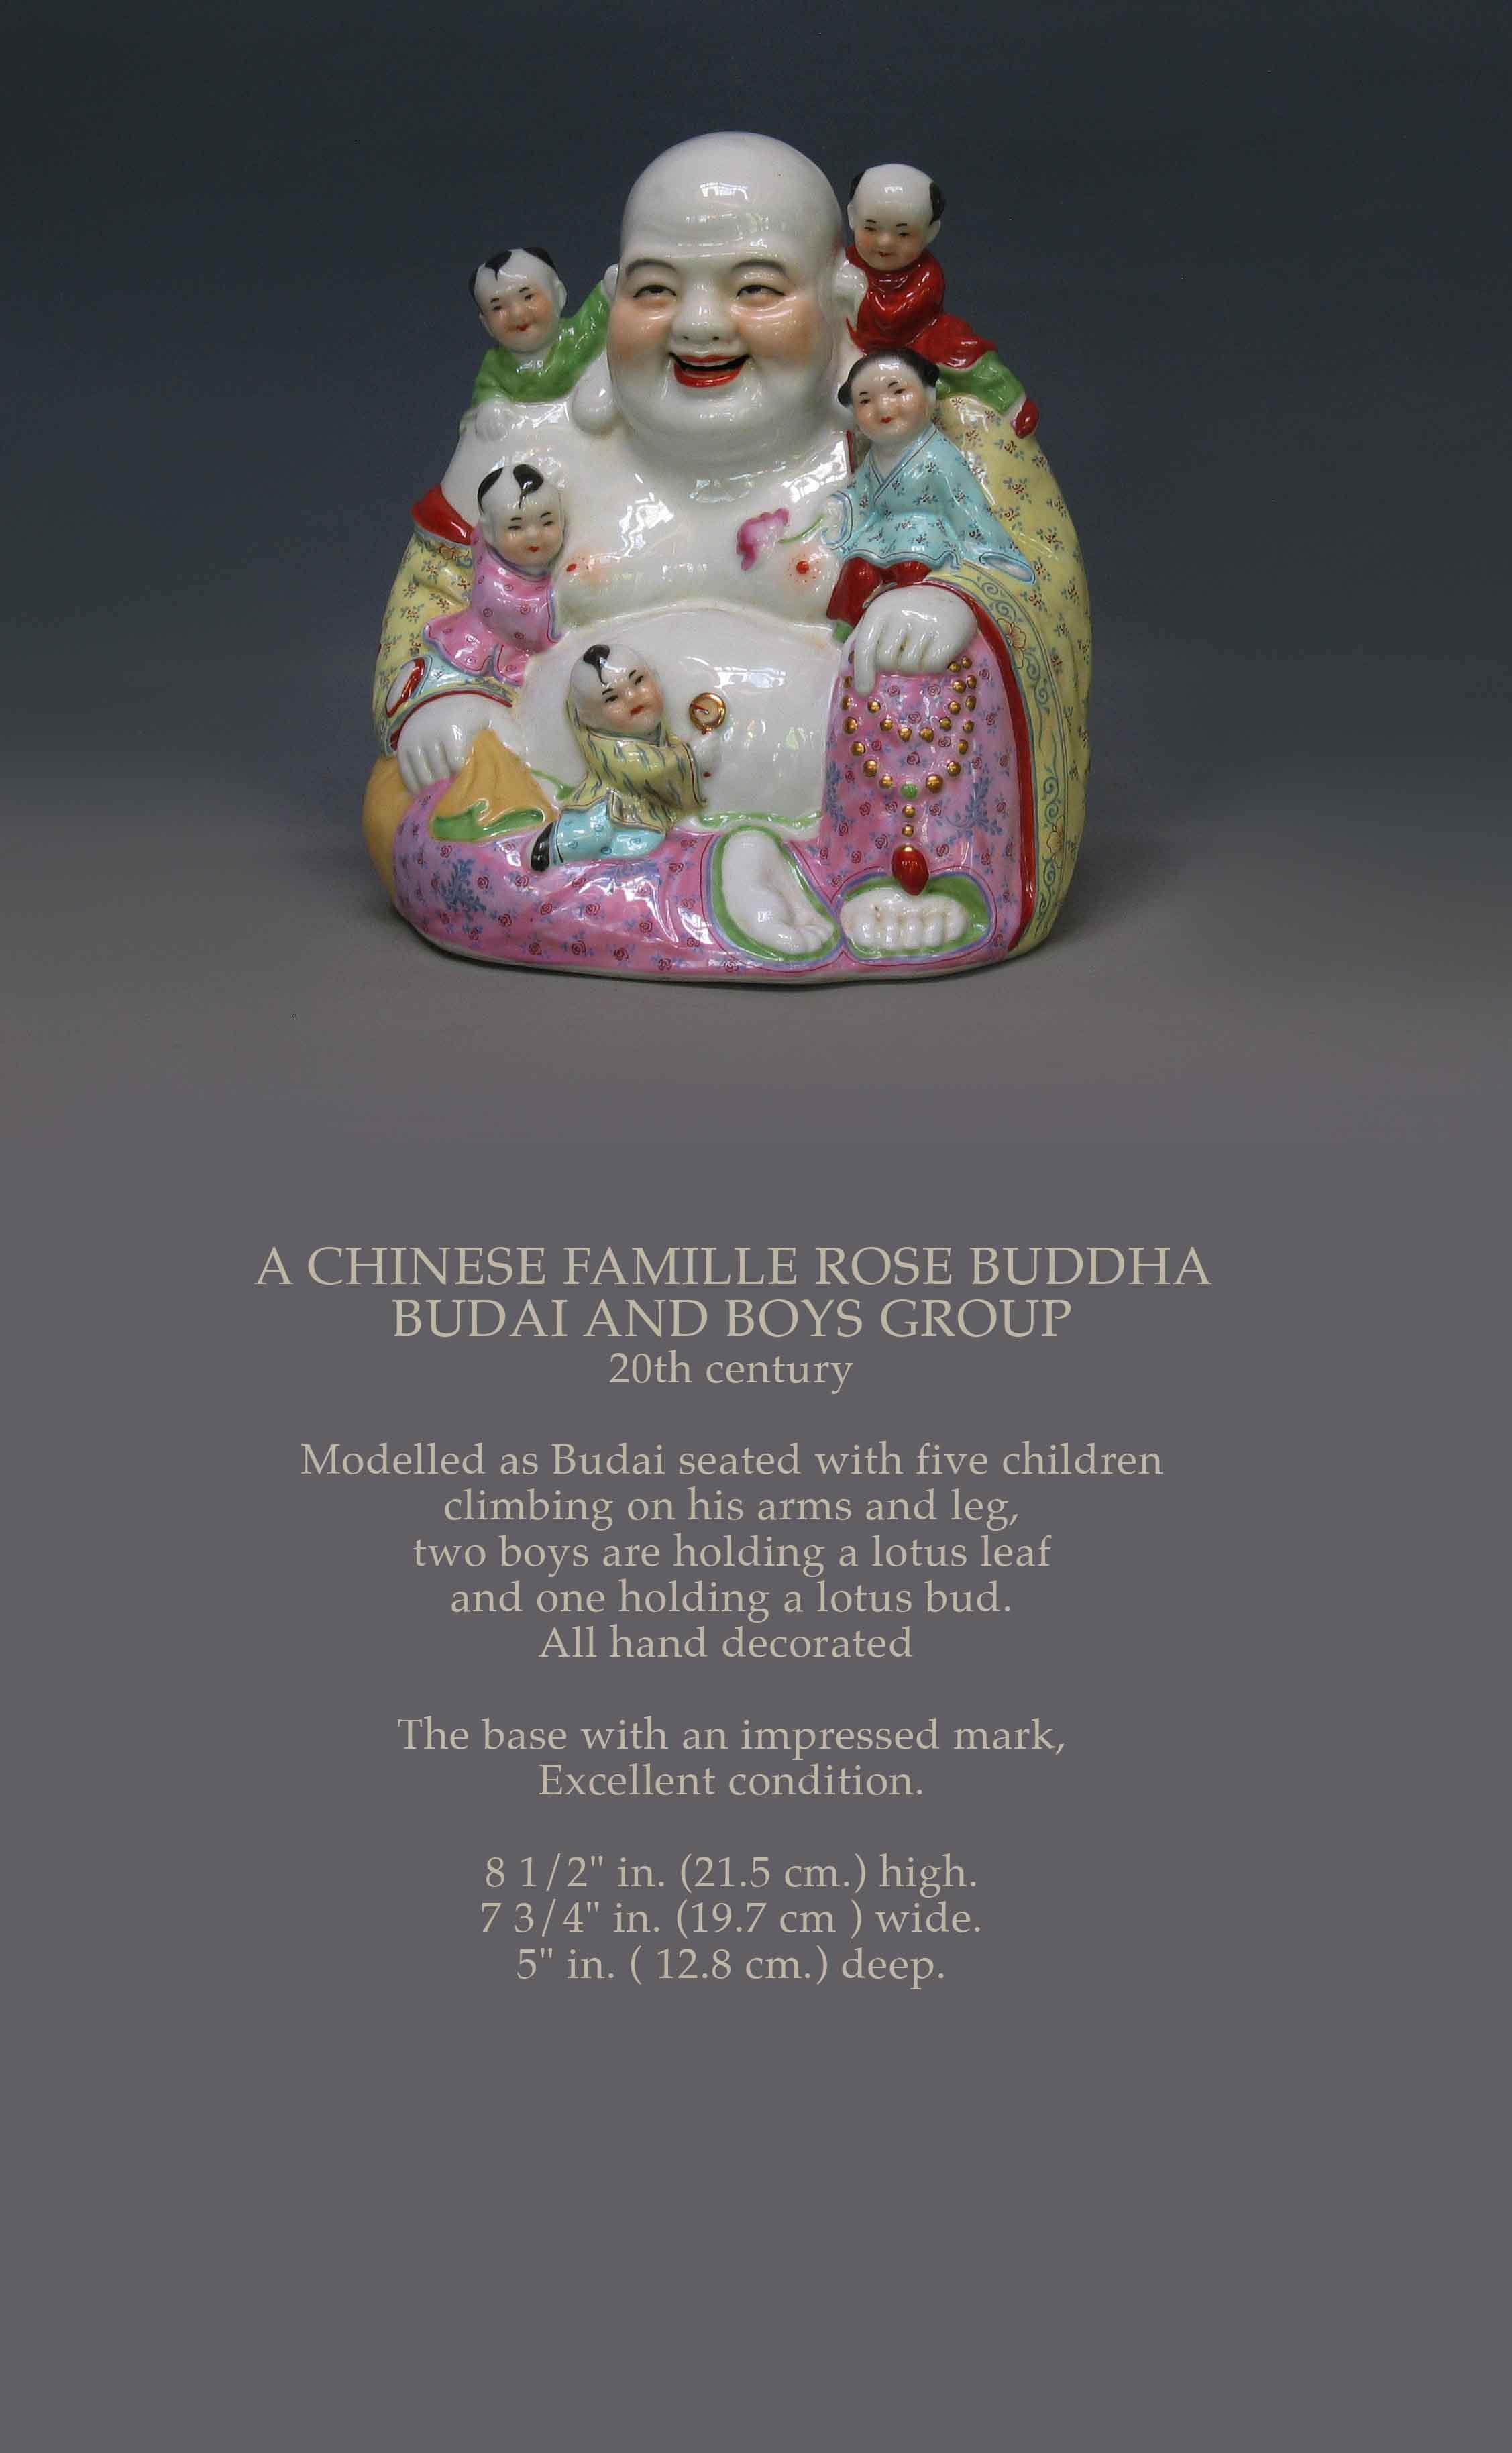 EIN CHINESISCHER FAMILLE ROSE BUDDHA
BUDAI UND JUNGENGRUPPE
20. Jahrhundert

Modelliert als Budai sitzend mit fünf Kindern
auf seine Arme und Beine klettern,
zwei Jungen halten ein Lotusblatt
und einer hält eine Lotusknospe.
Alle von Hand